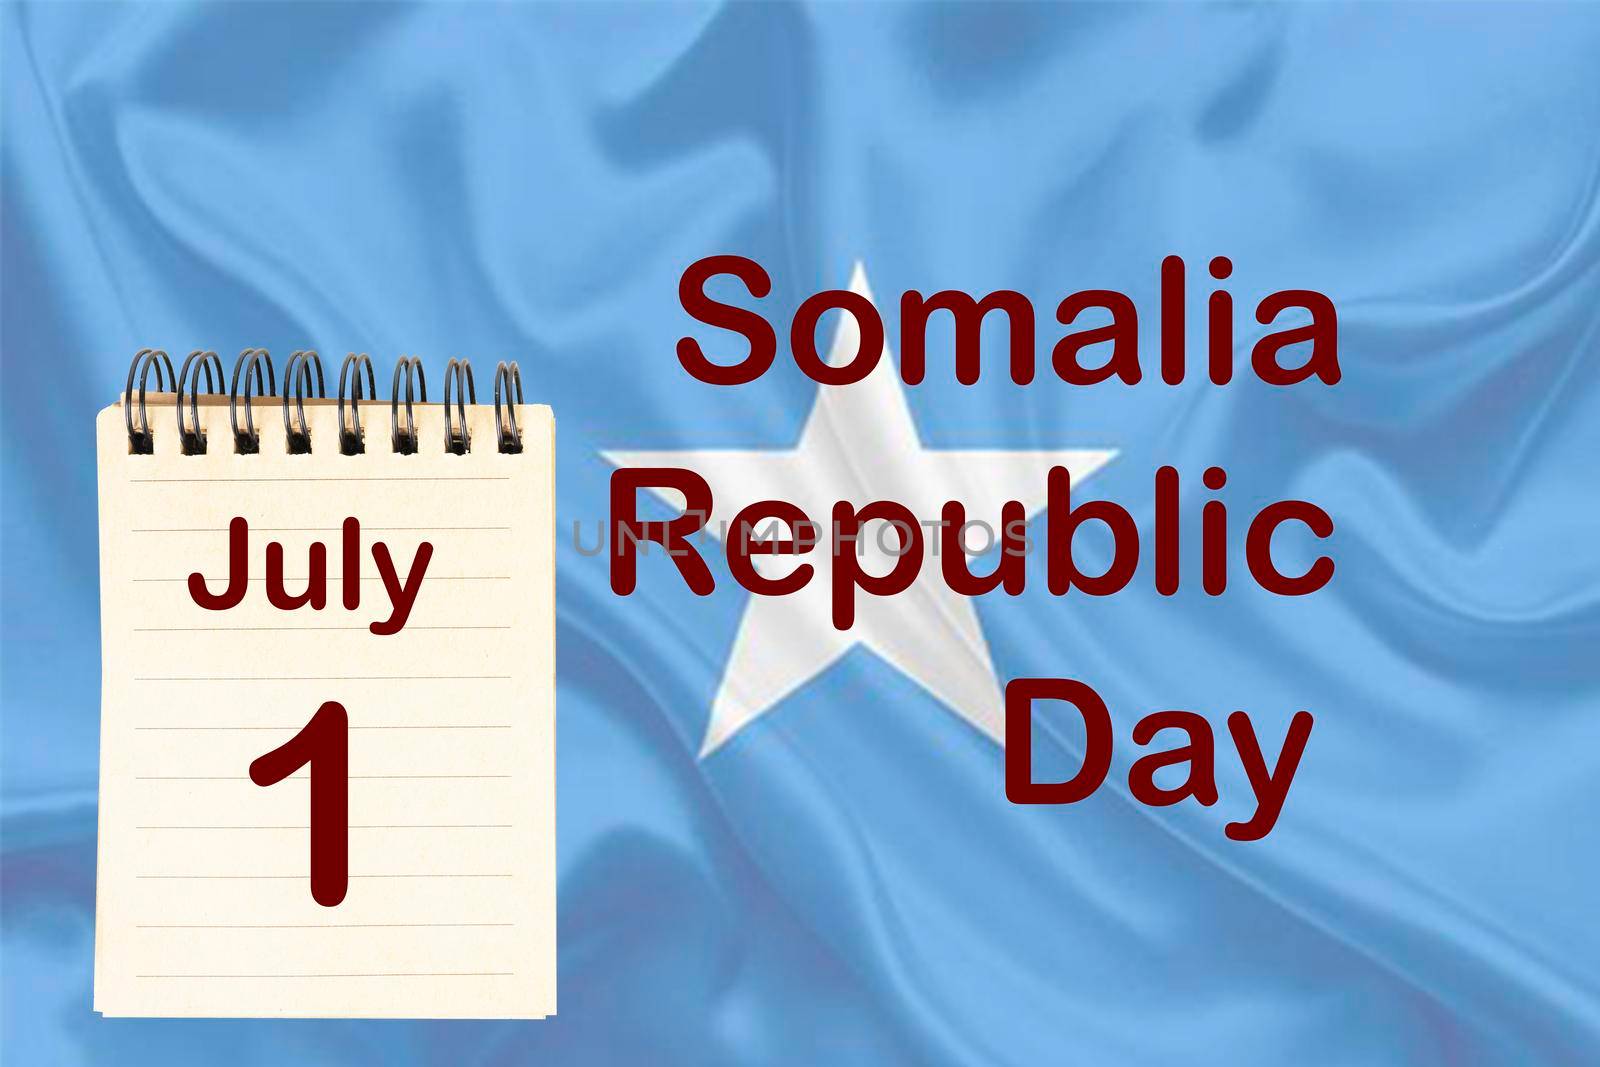 Somalia Republic Day by sergiodv